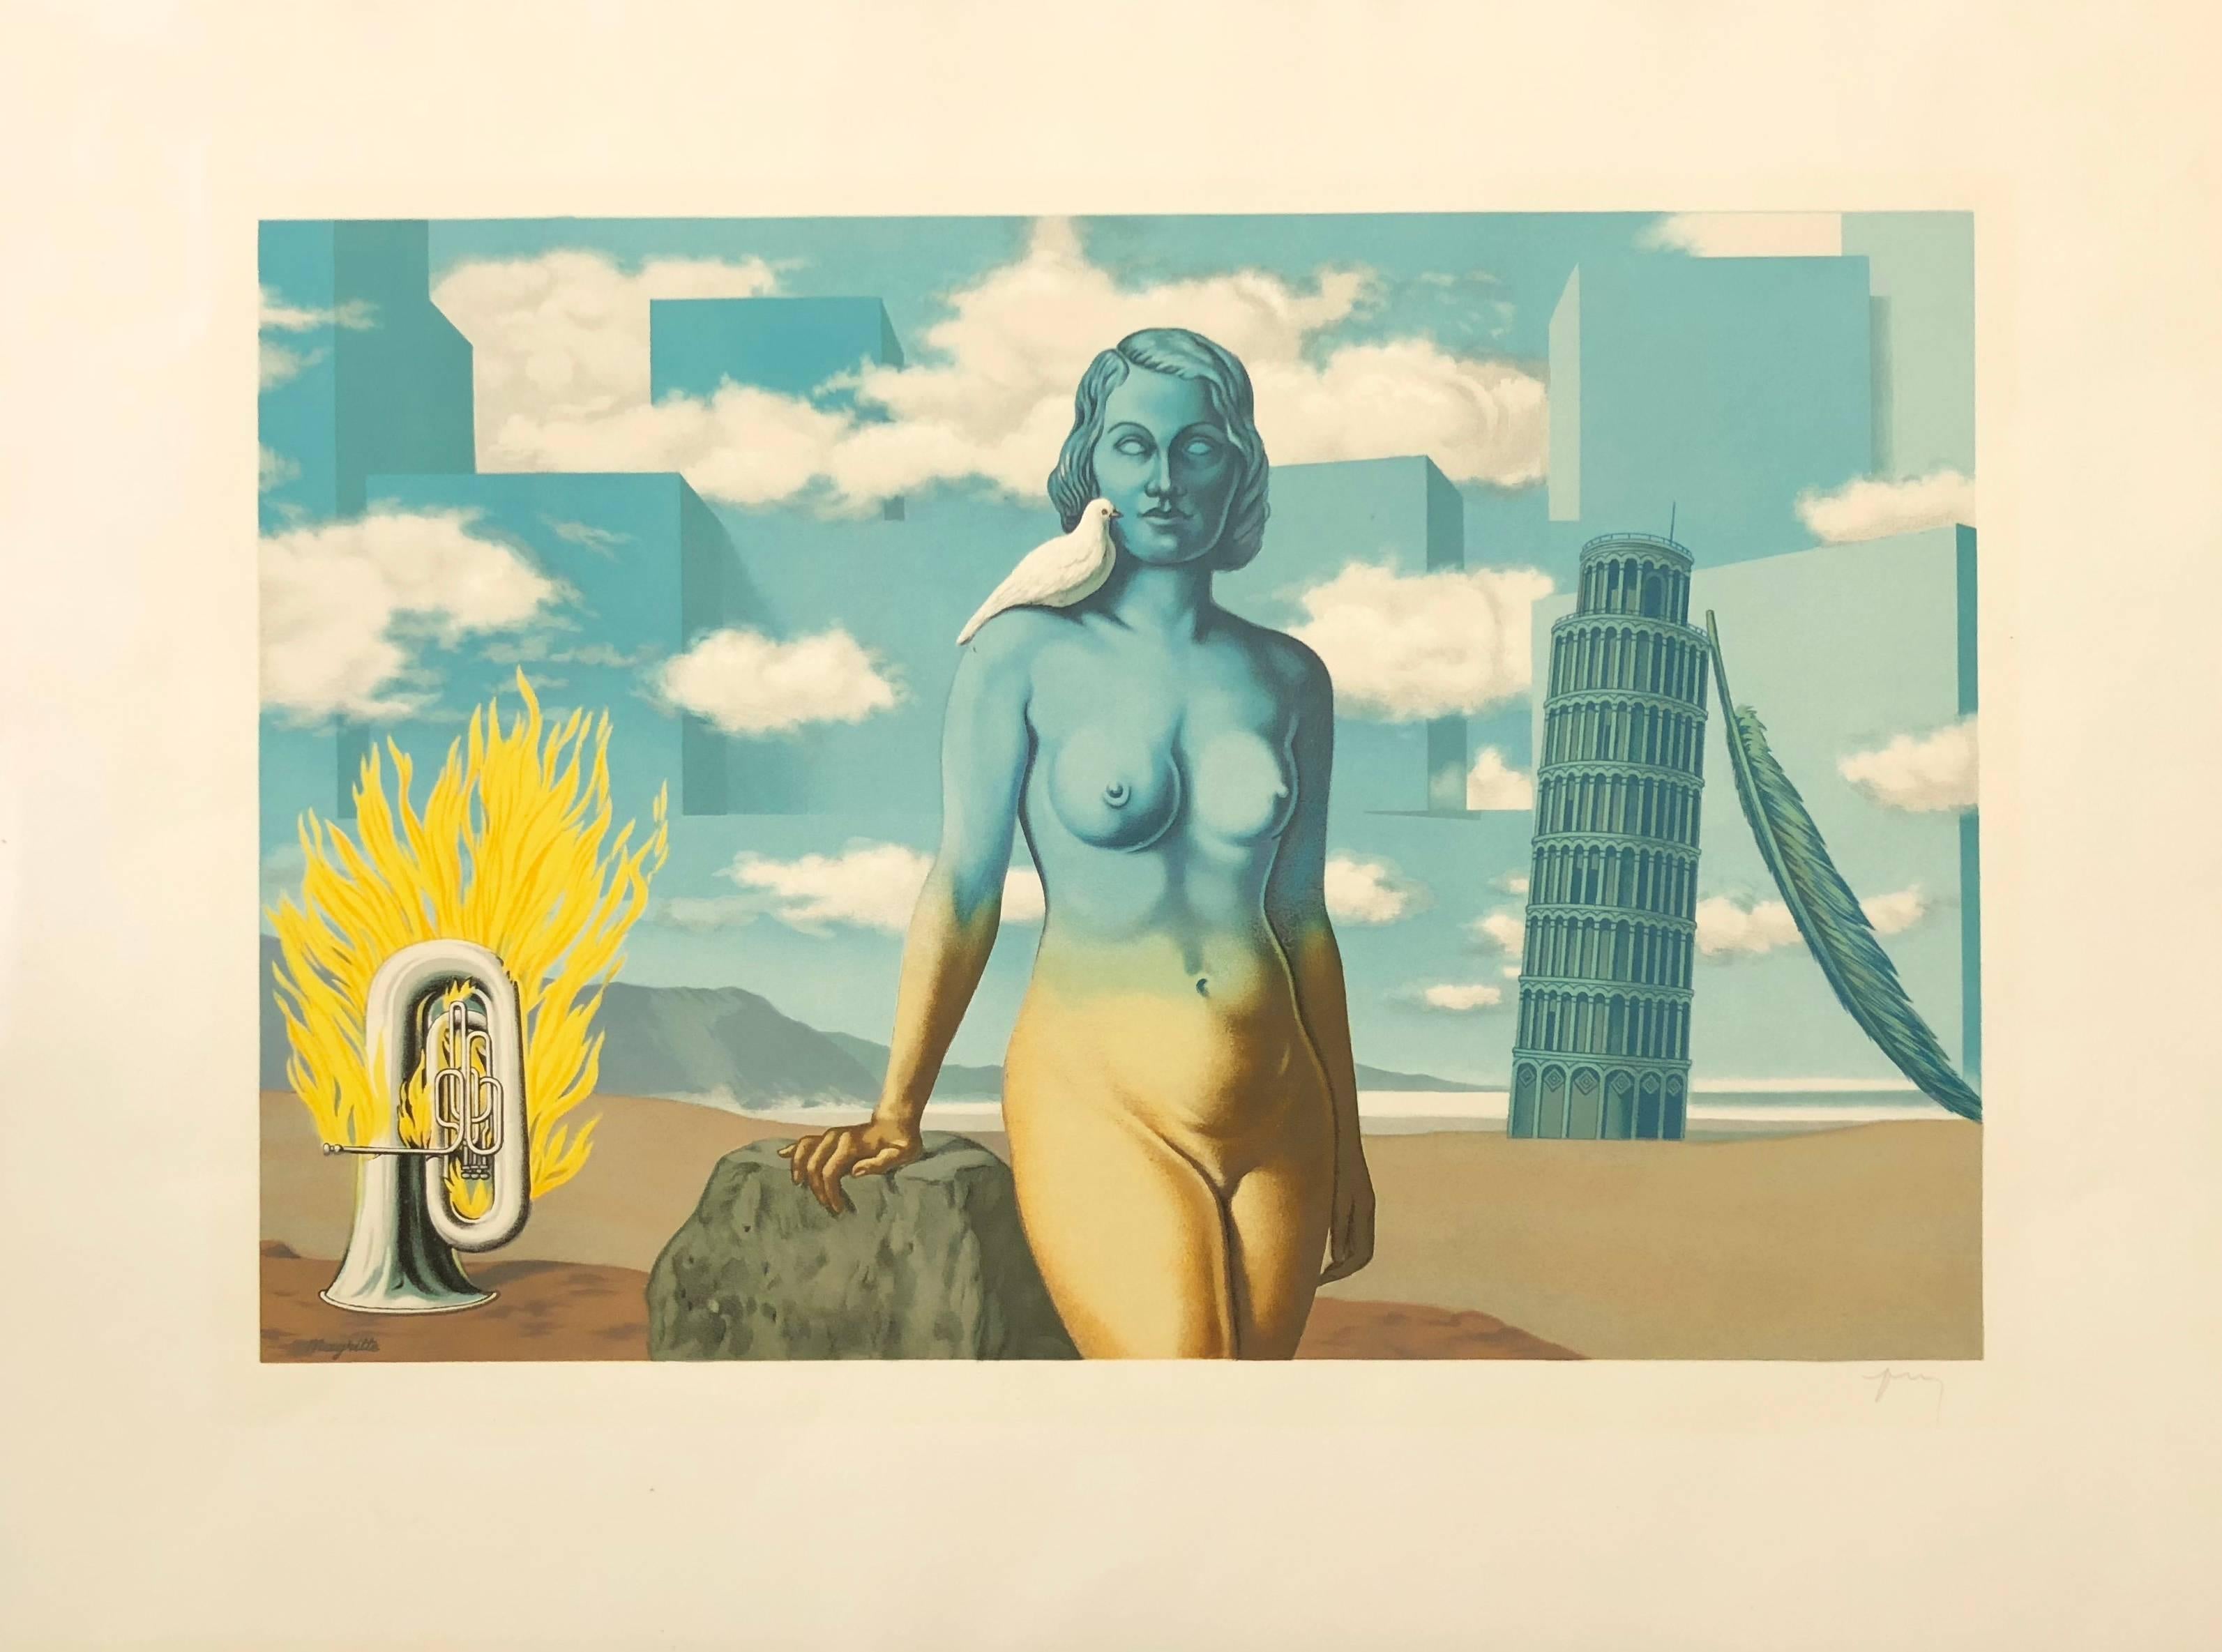 (after) René Magritte Nude Print - Le Domaine Enchanté VI - Original Lithograph After René Magritte by F. Mourlot